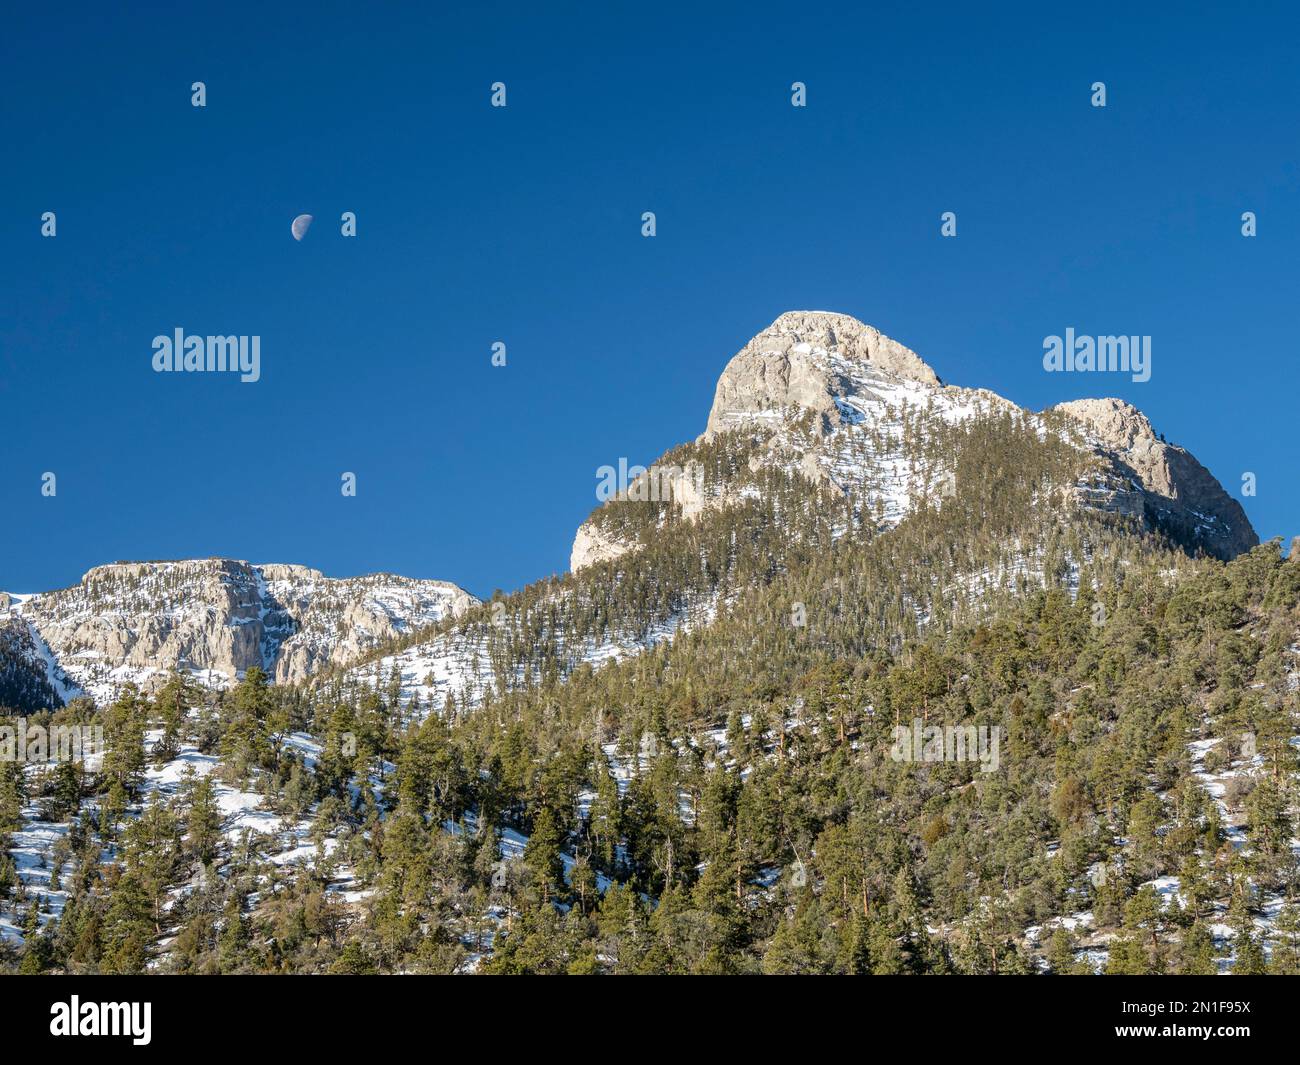 Schneebedeckte Spring Mountains National Recreation Area, Humboldt-Toiyabe National Forest, Nevada, Vereinigte Staaten von Amerika, Nordamerika Stockfoto